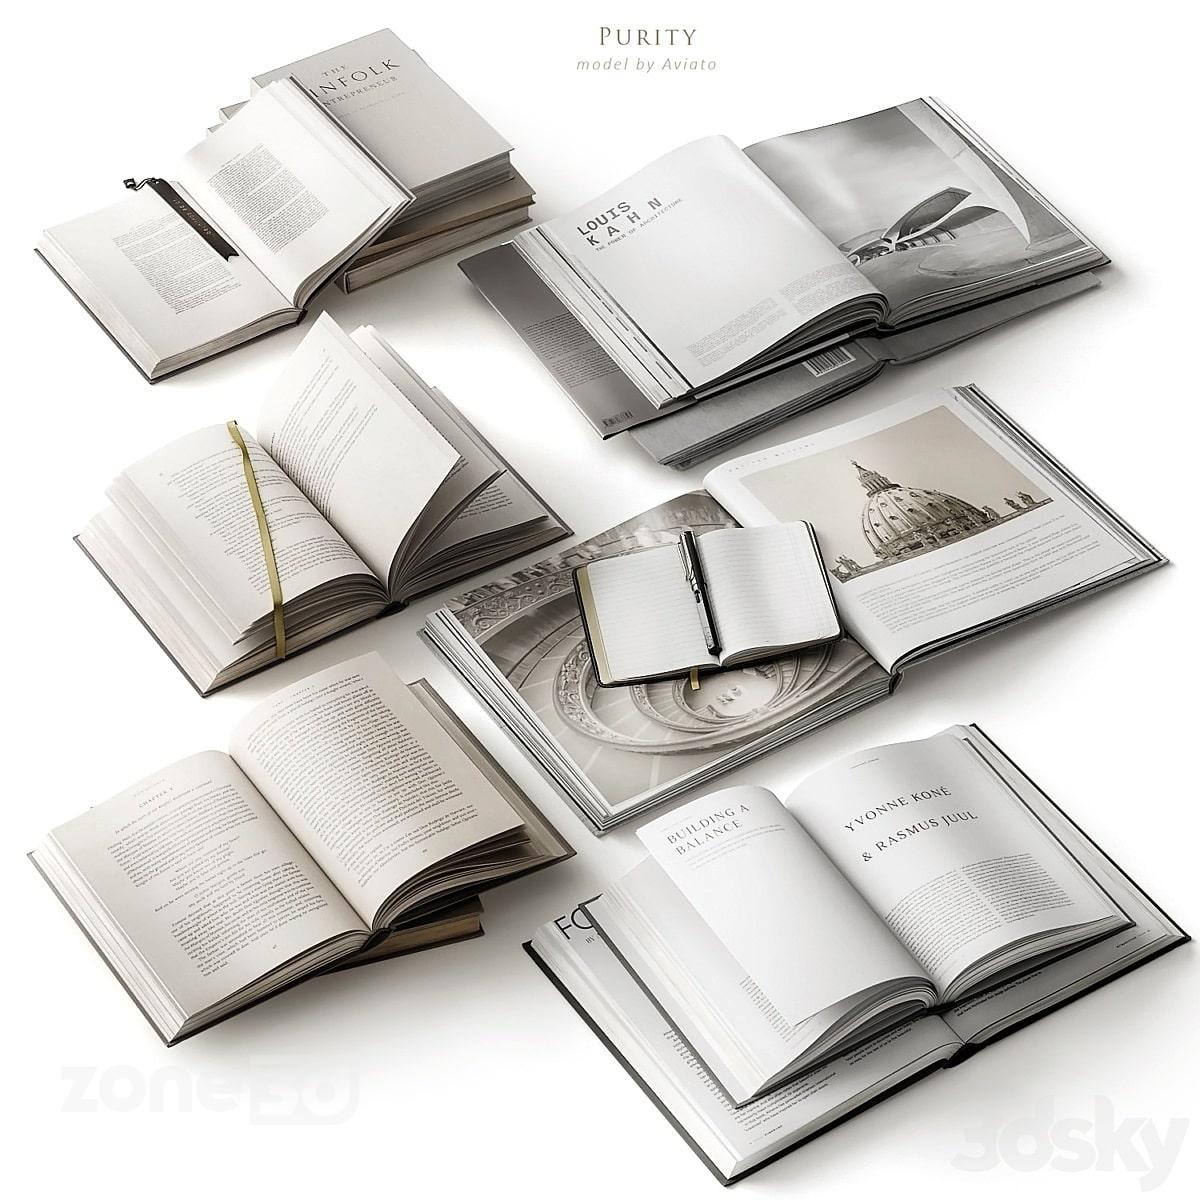 آبجکت ست کتاب جلد چرمی و مجلات دکوری مدل Purity